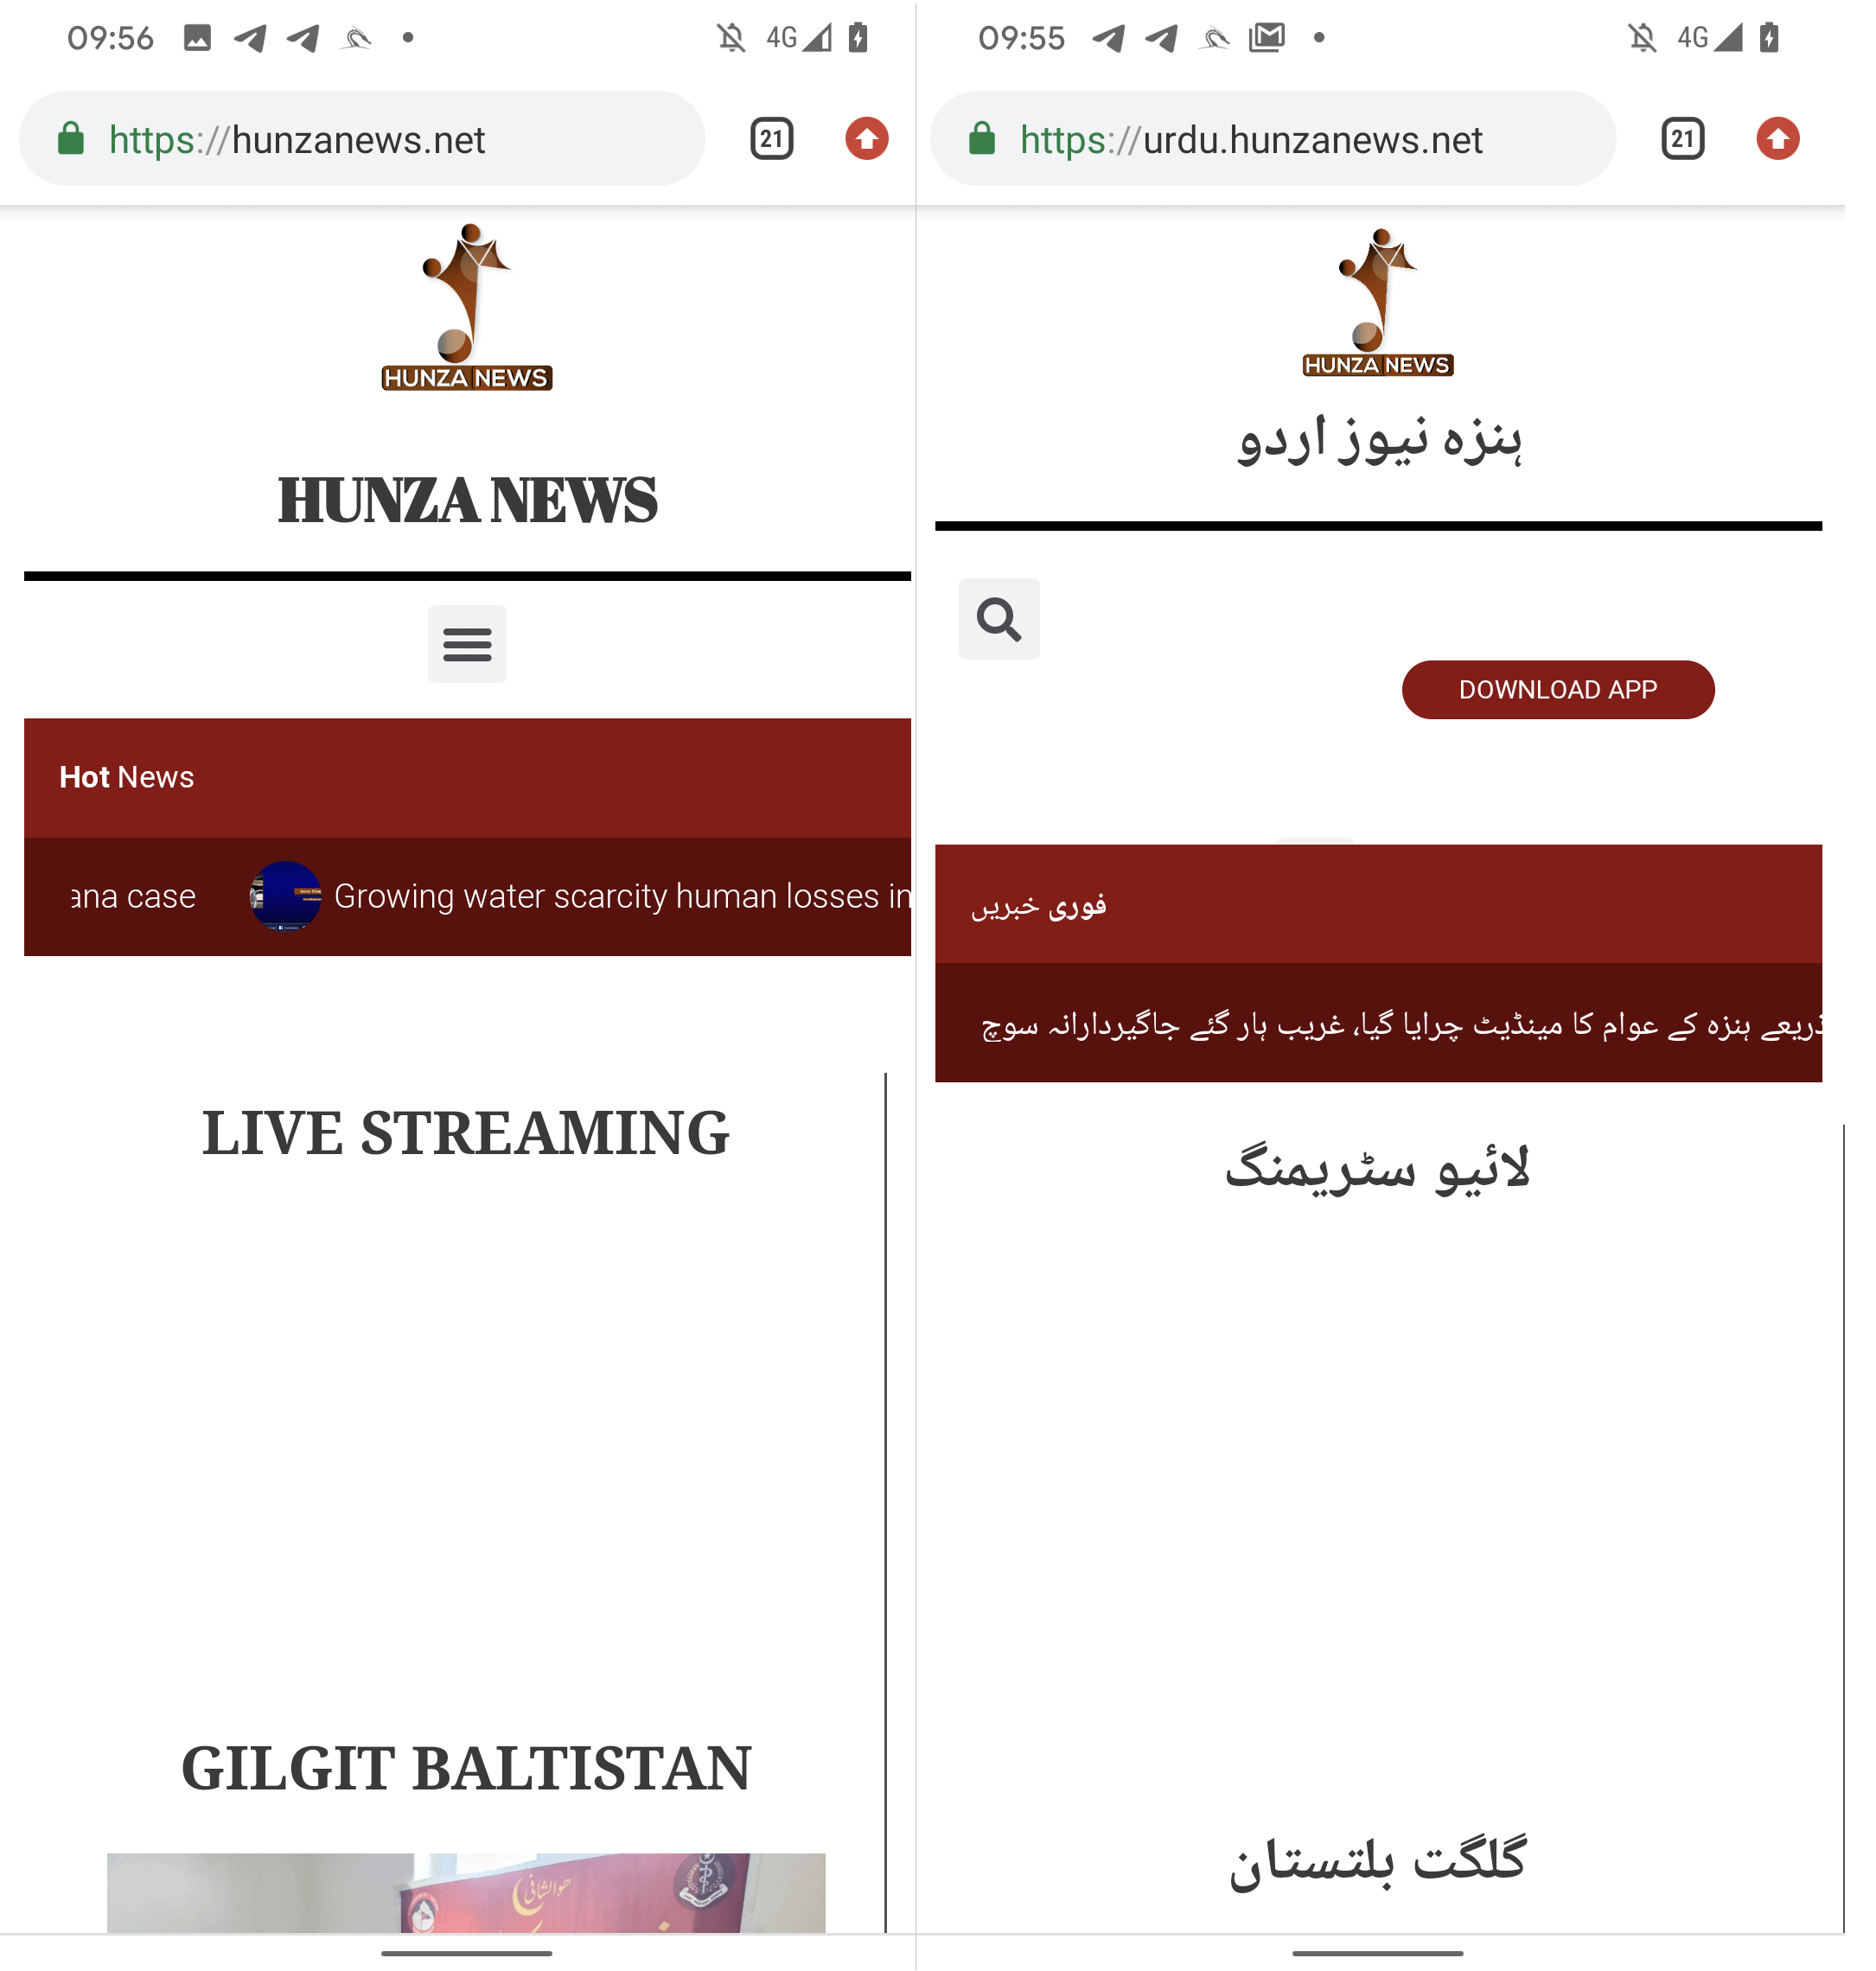 Figur 6 Engelsk (venstre) og urdu (høyre) versjon Hunza News